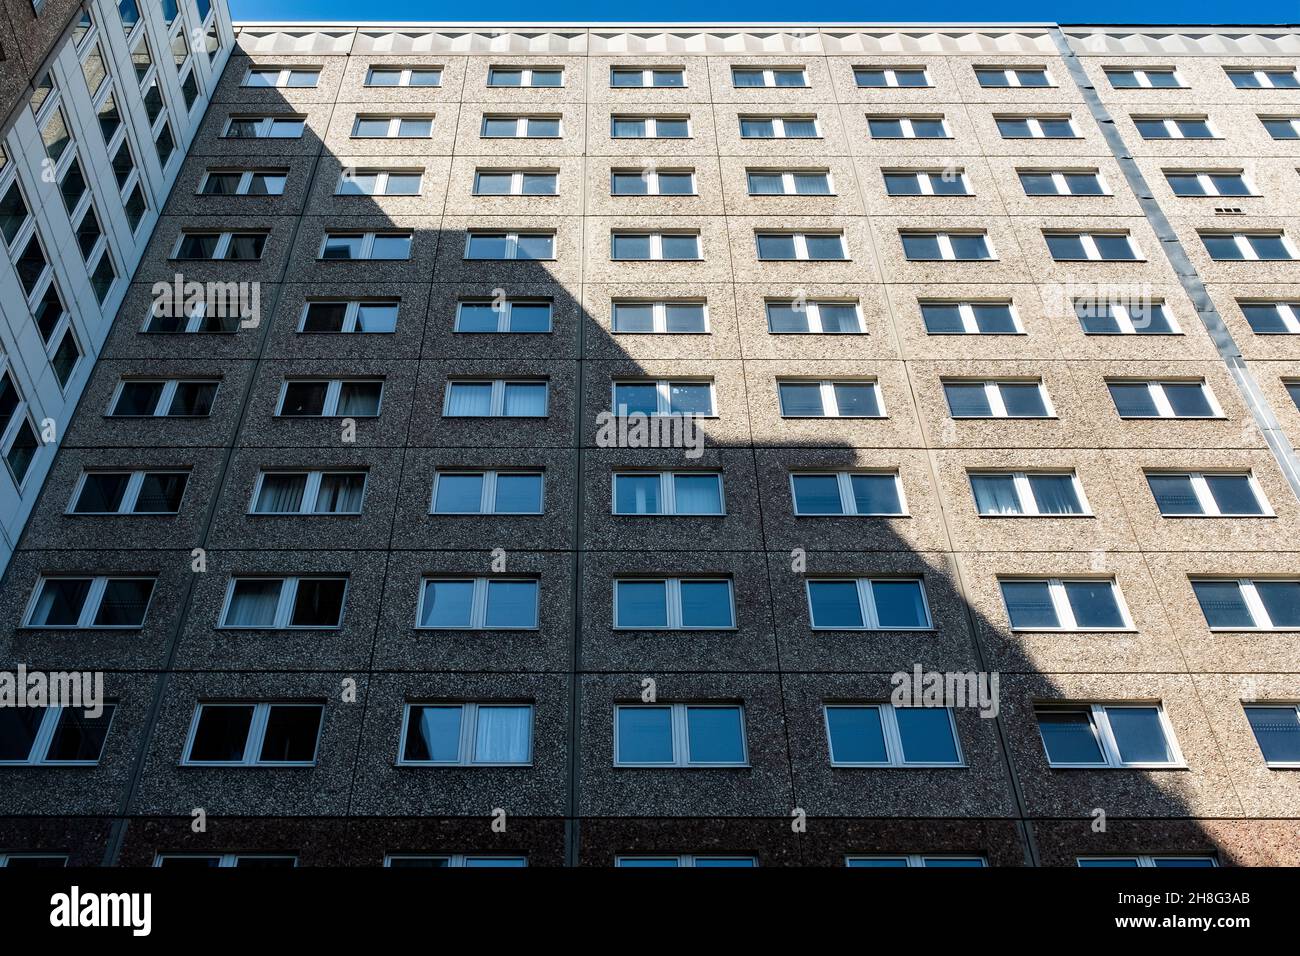 Berlin, Allemagne.L'un des nombreux bâtiments, où l'ancien Service de renseignement de Stasi était situé à Berlin-est, jusqu'à ce que le mur soit détruit en 1989.Depuis, c'est un musée qui accueille les Archives de la Stasi, accessibles aux personnes d'intérêt.Bel exemple d'architecture de Plattenbau est-allemande. Banque D'Images